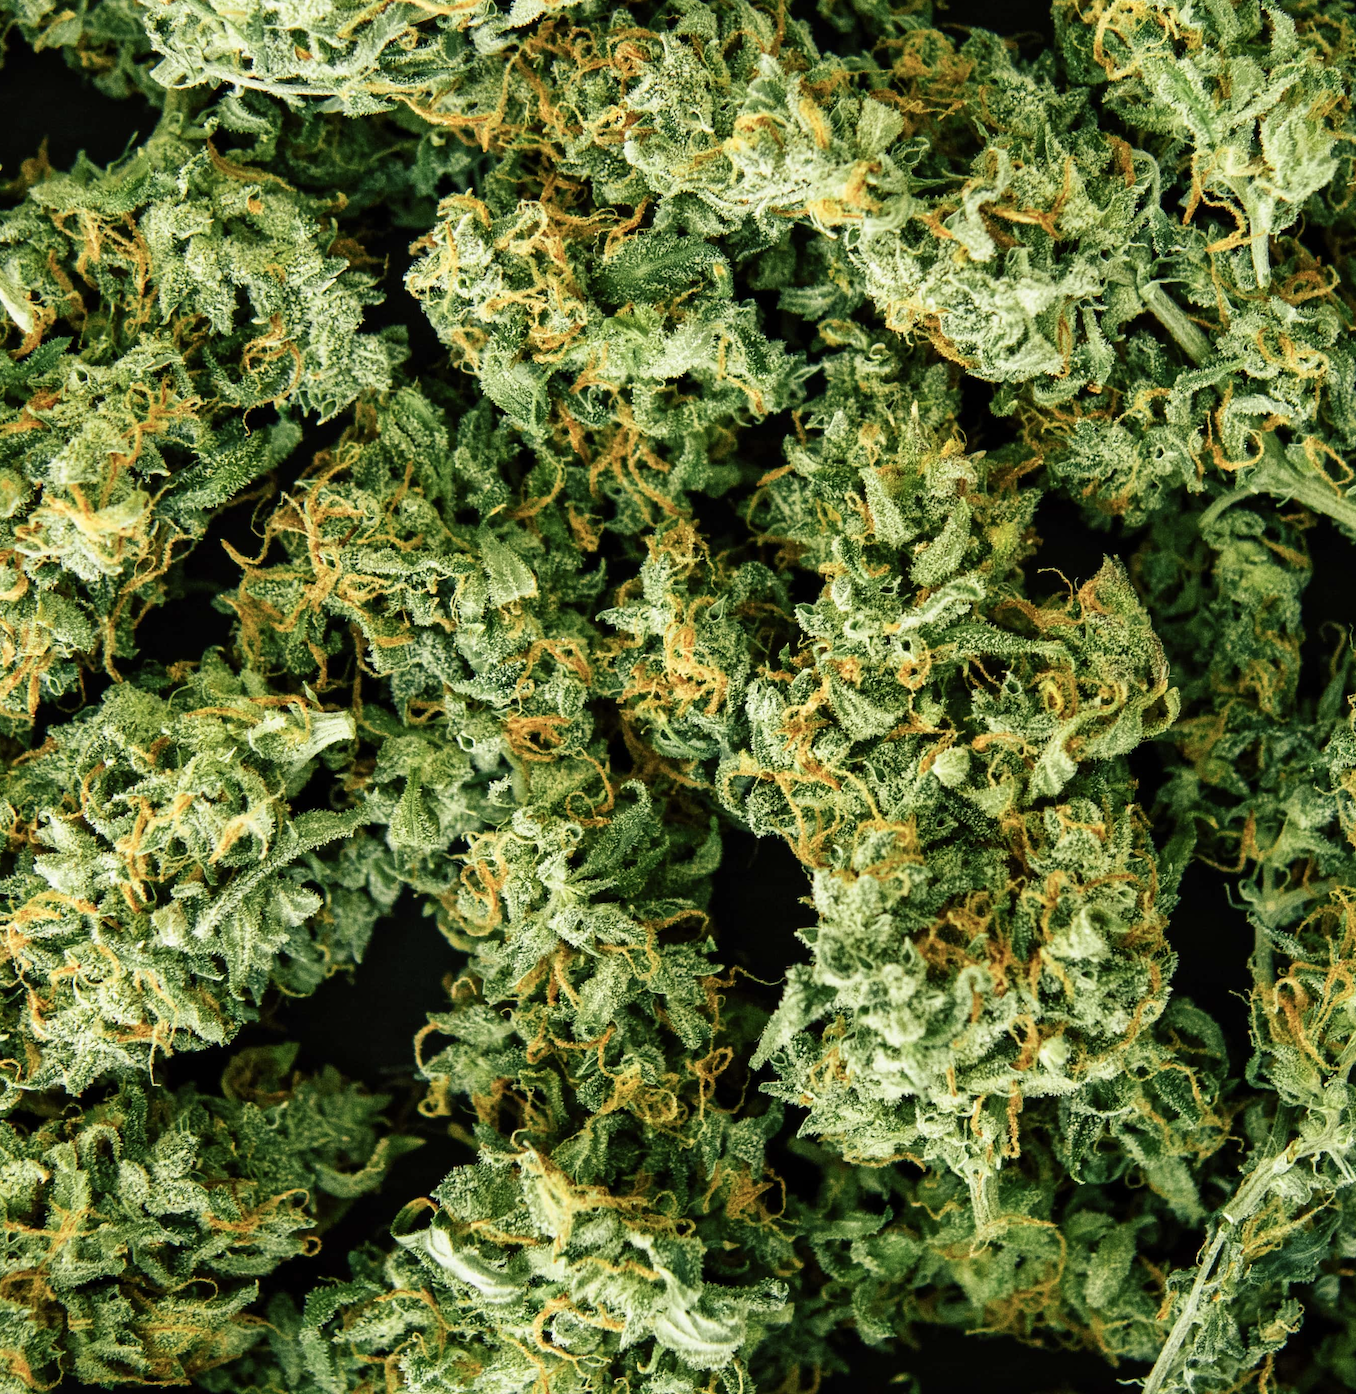 Fresh cannabis bud